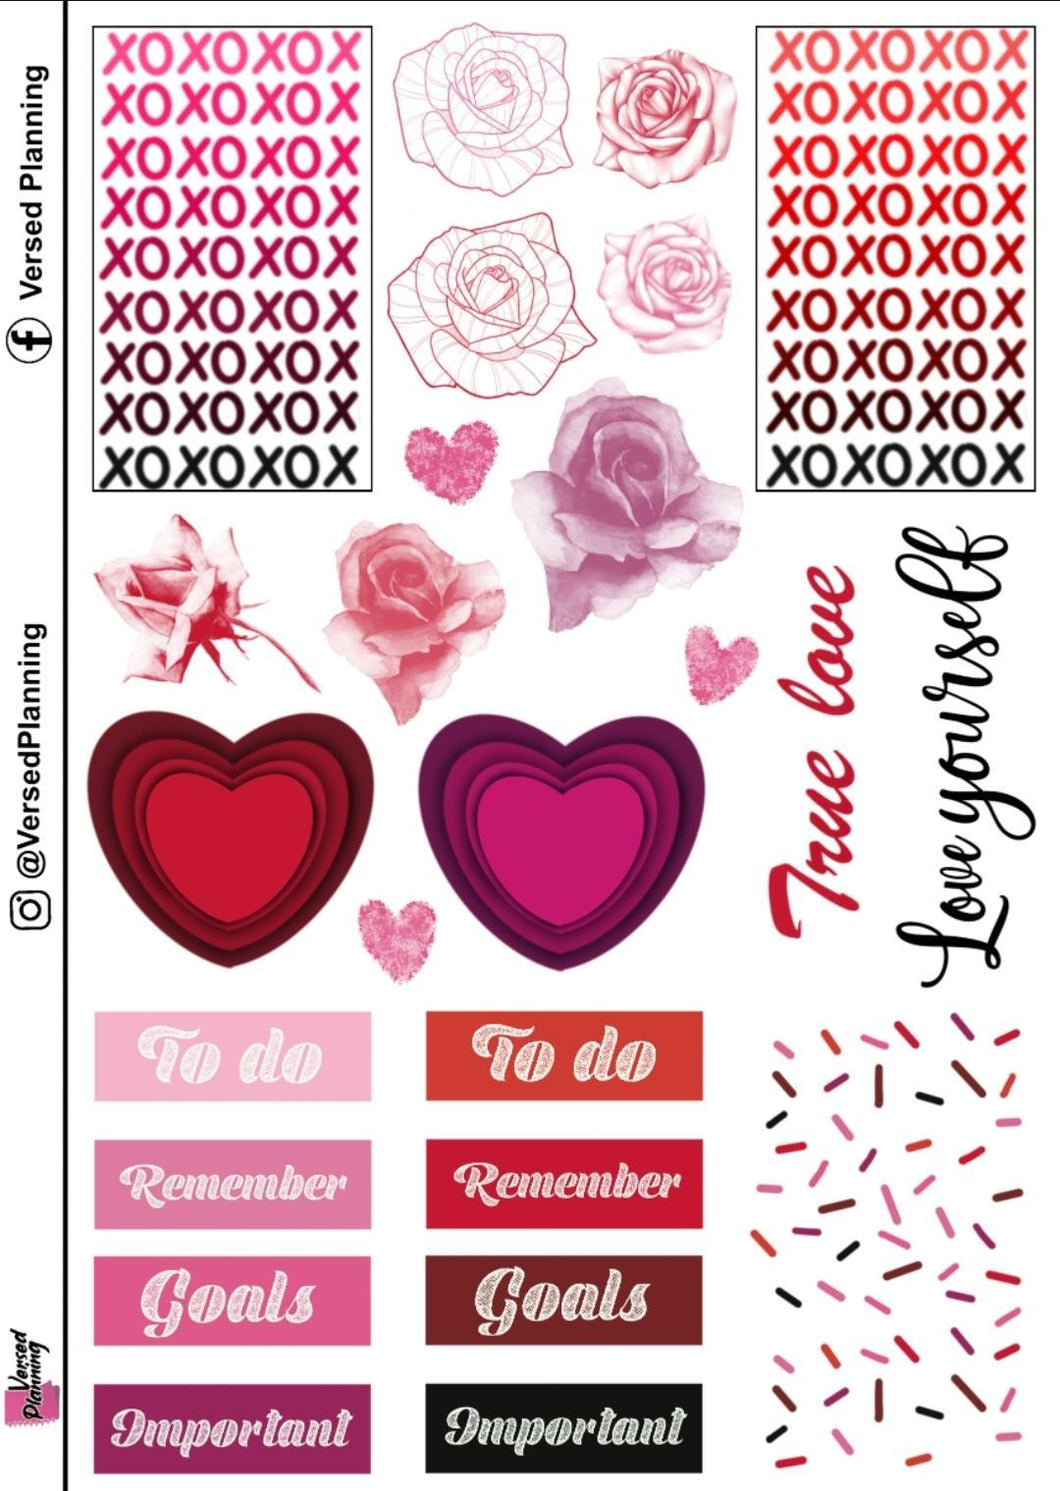 XOXOXO Love Sheet